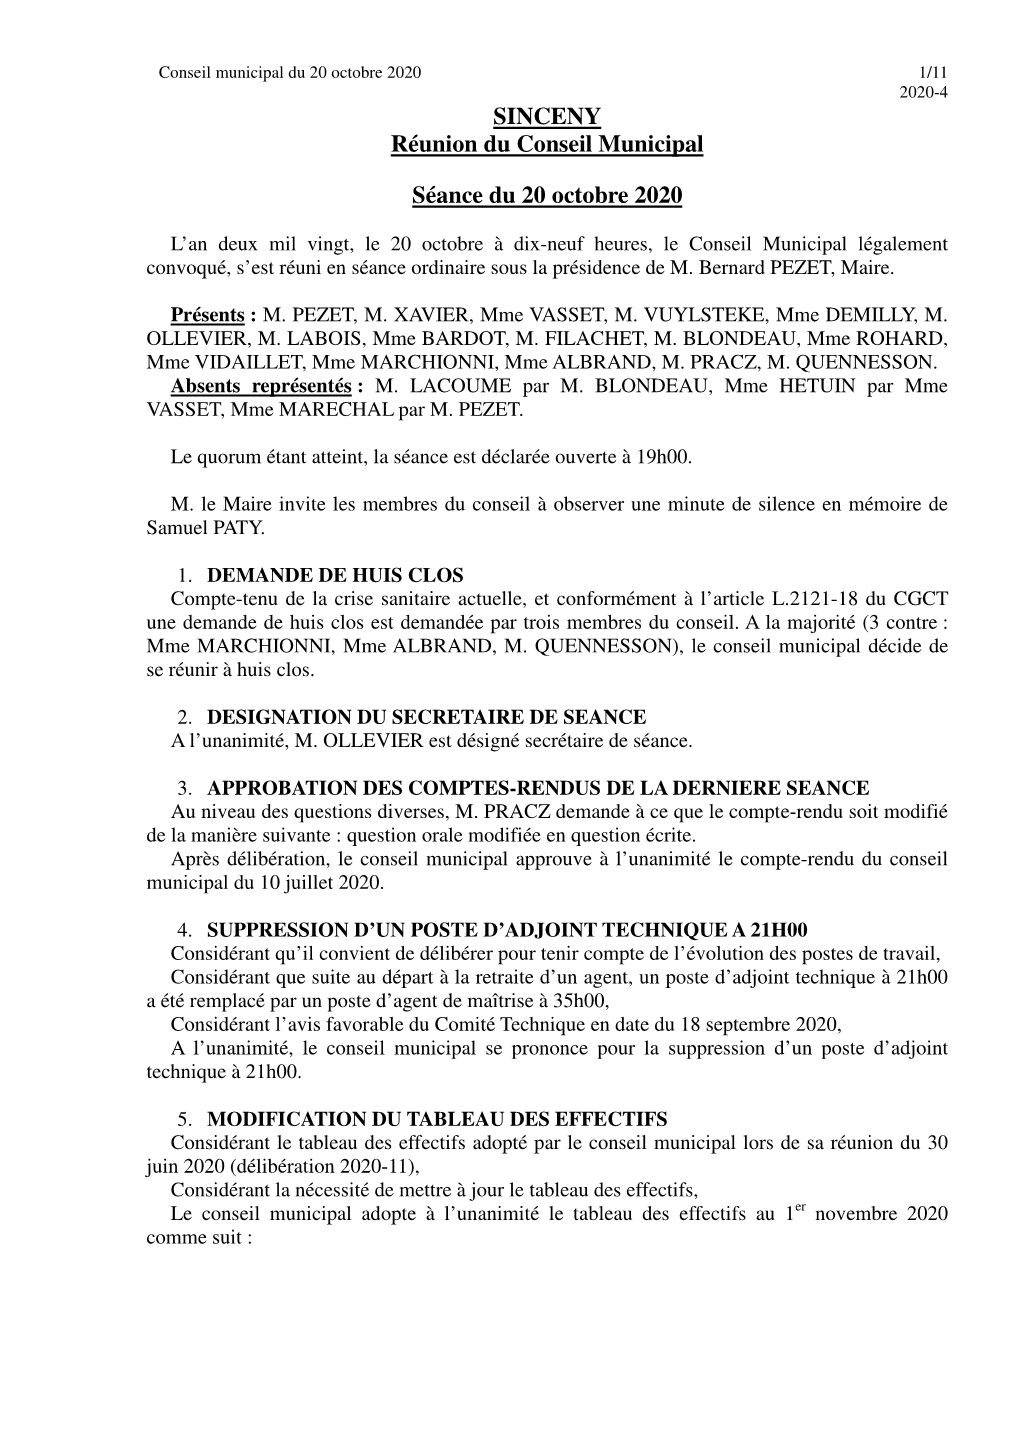 SINCENY Réunion Du Conseil Municipal Séance Du 20 Octobre 2020